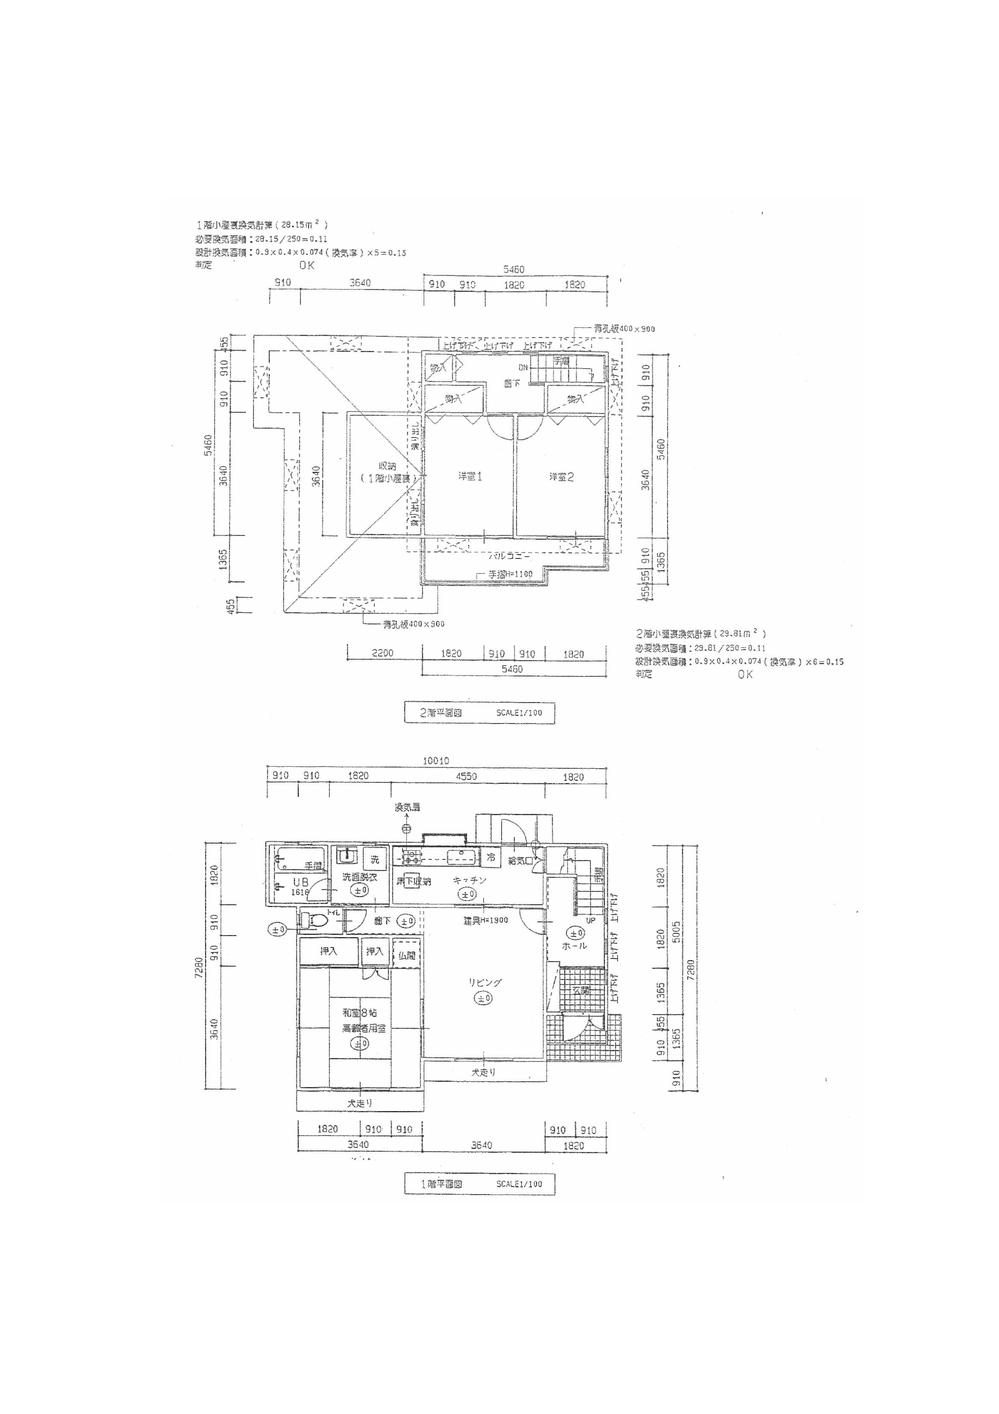 Floor plan. 12.8 million yen, 3LDK, Land area 469.6 sq m , Building area 98.26 sq m